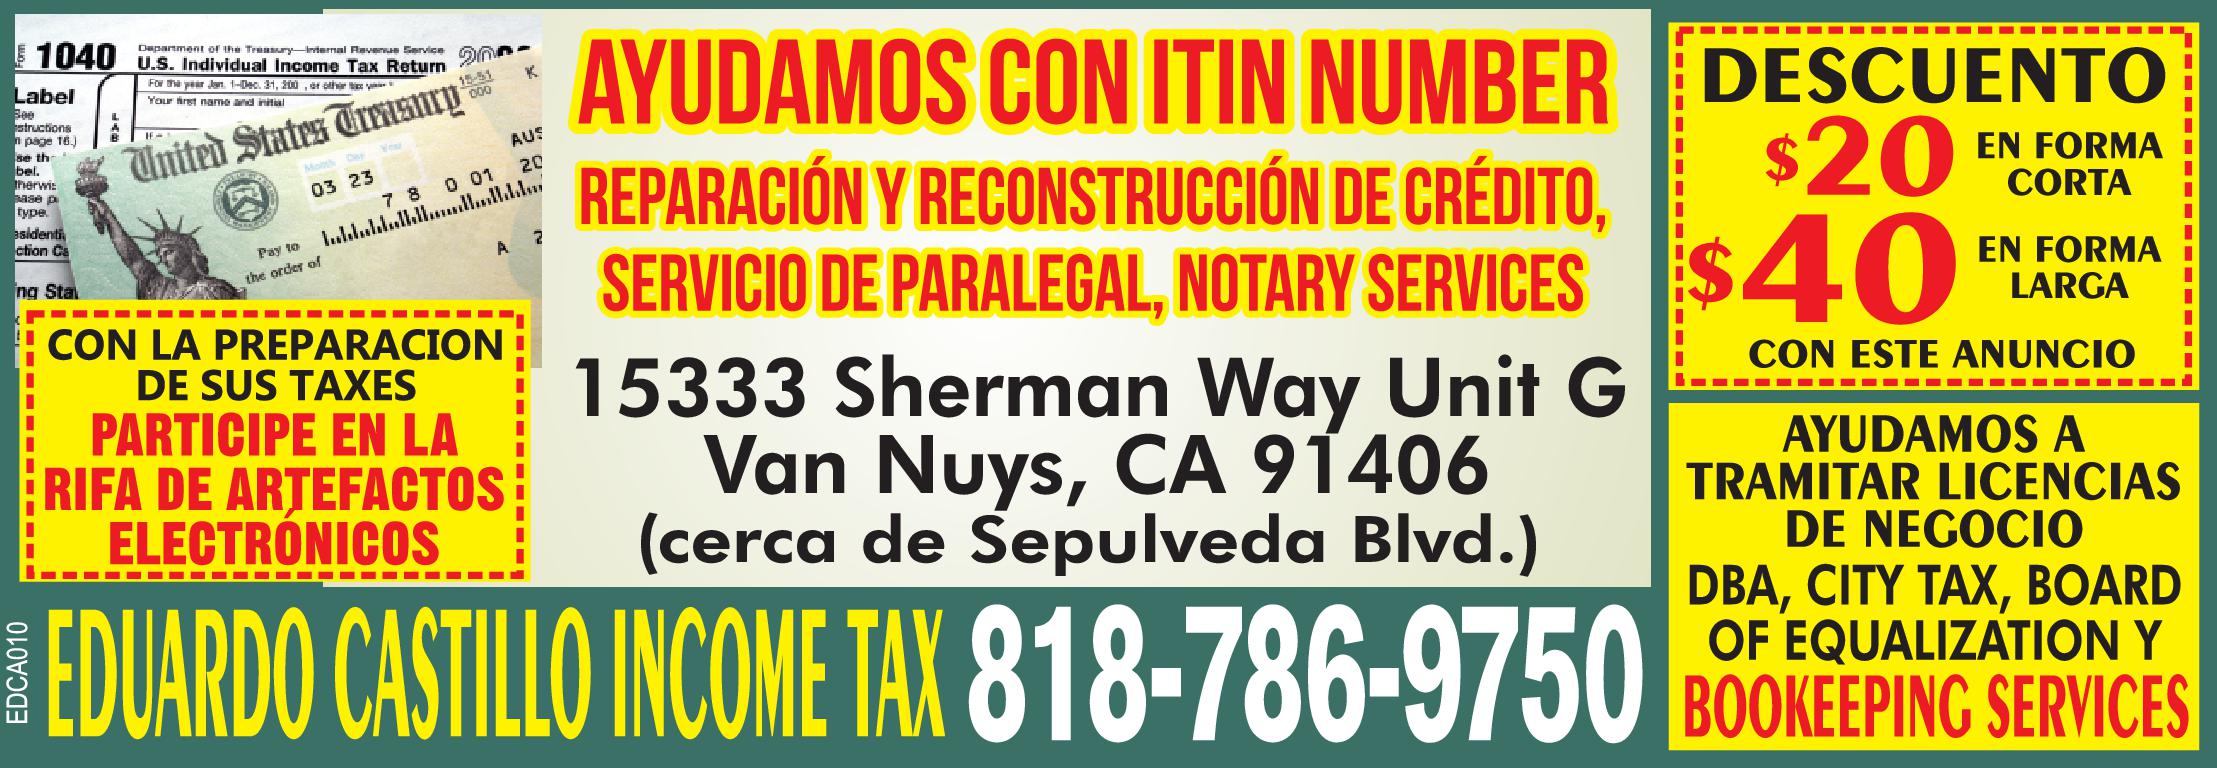 AYUDAMOS CON ITIN NUMBER REPARACIÓN Y RECONSTRUCCIÓN DE CRÉDITO, SERVICIO DE PARALEGAL, NOTARY SERVICES. DESCUENTO $20 EN FORMA CORTA $40 EN FORMA LARGA 
CON ANUNCIO DE LA REVISTA EL AVISO 
15333 Sherman Way Unit G Van Nuys, CA 91406 (cerca de Sepulveda Blvd.) 
CON LA PREPARACIÓN DE SUS TAXES PARTICIPE EN LA RIFA DE ARTEFACTOS ELECTRÓNICOS 
EDUARDO CASTILLO INCOME TAX 818-786-9750 
AYUDAMOS A TRAMITAR LICENCIAS DE NEGOCIO DBA, CITY TAX, BOARD OF EQUALIZATION Y BOOKEEPING SERVICES